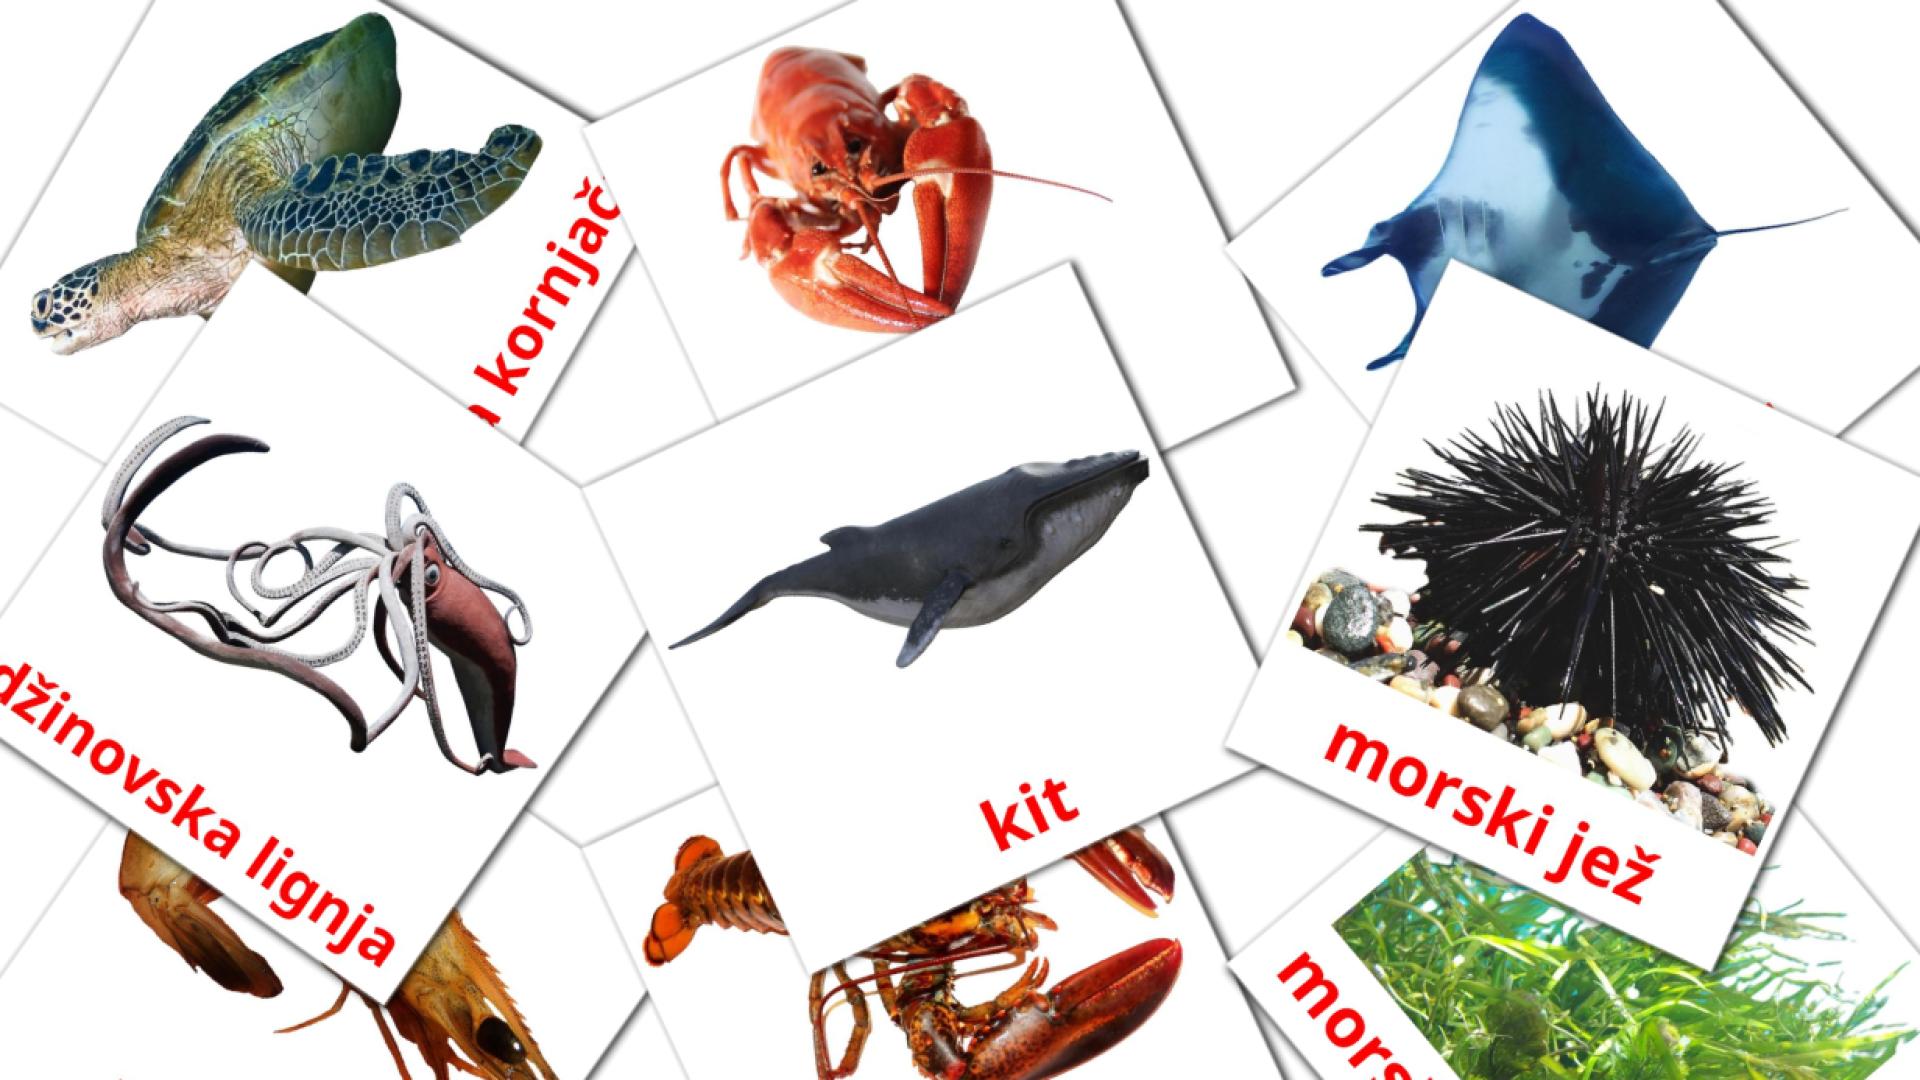 29 Bildkarten für morske životinje